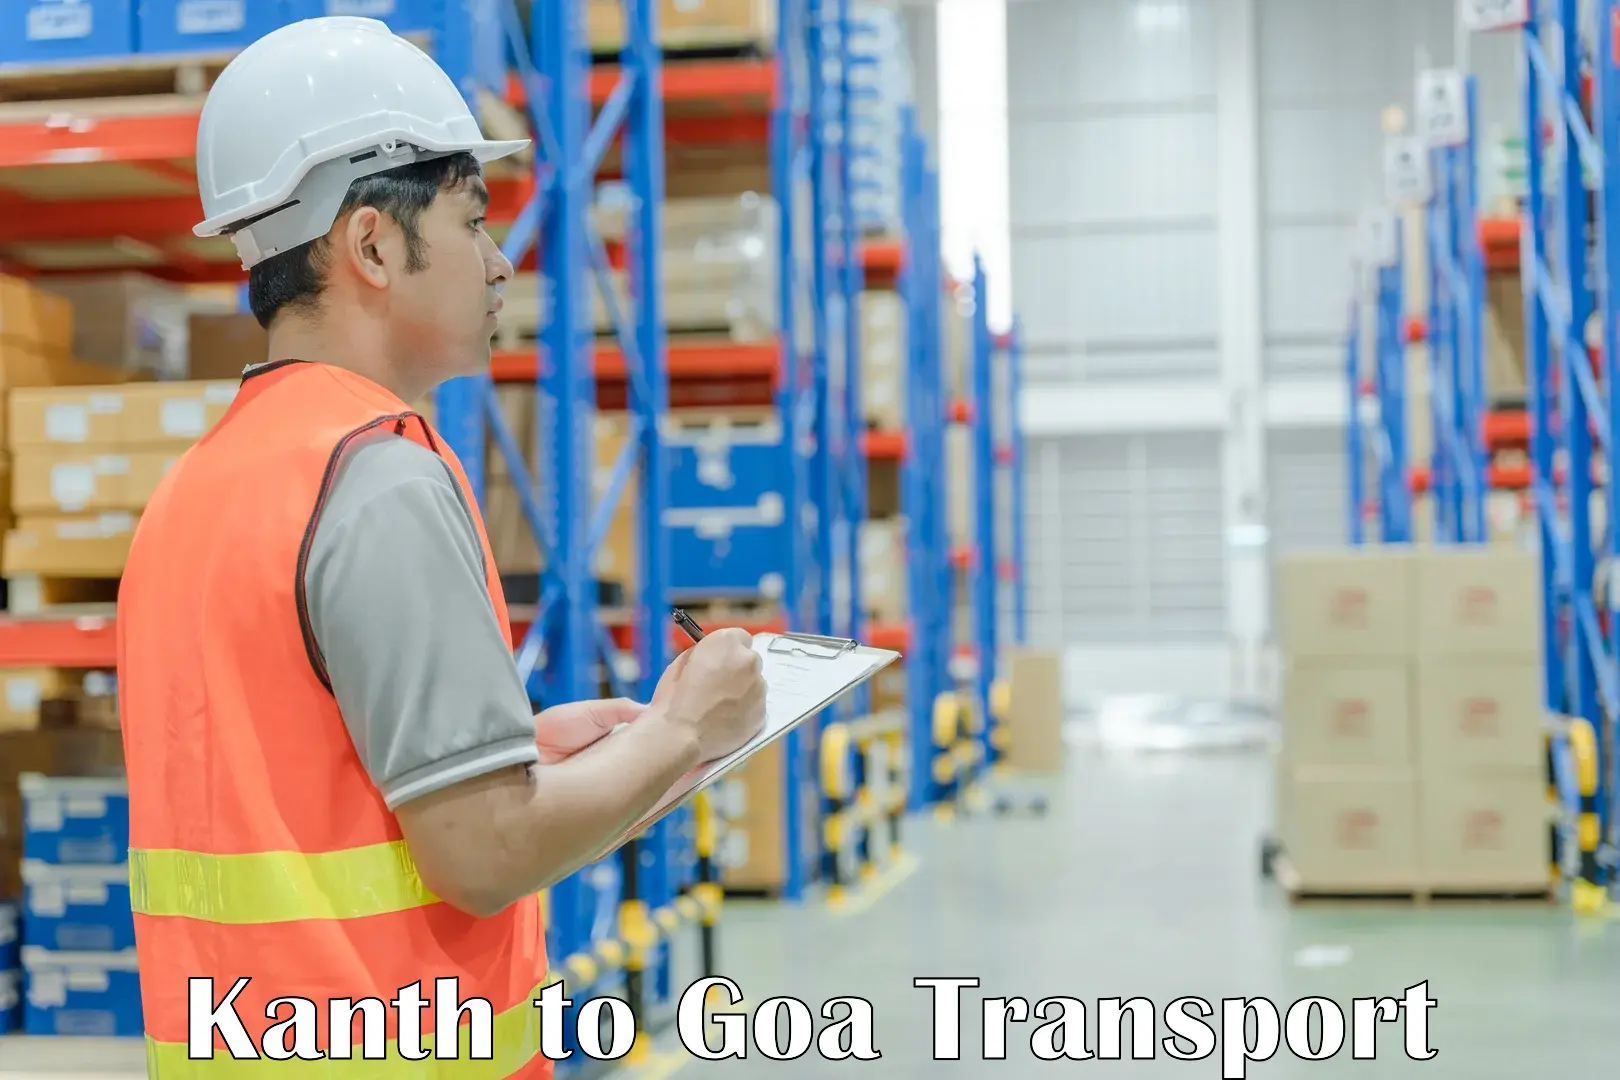 Online transport service Kanth to Mormugao Port